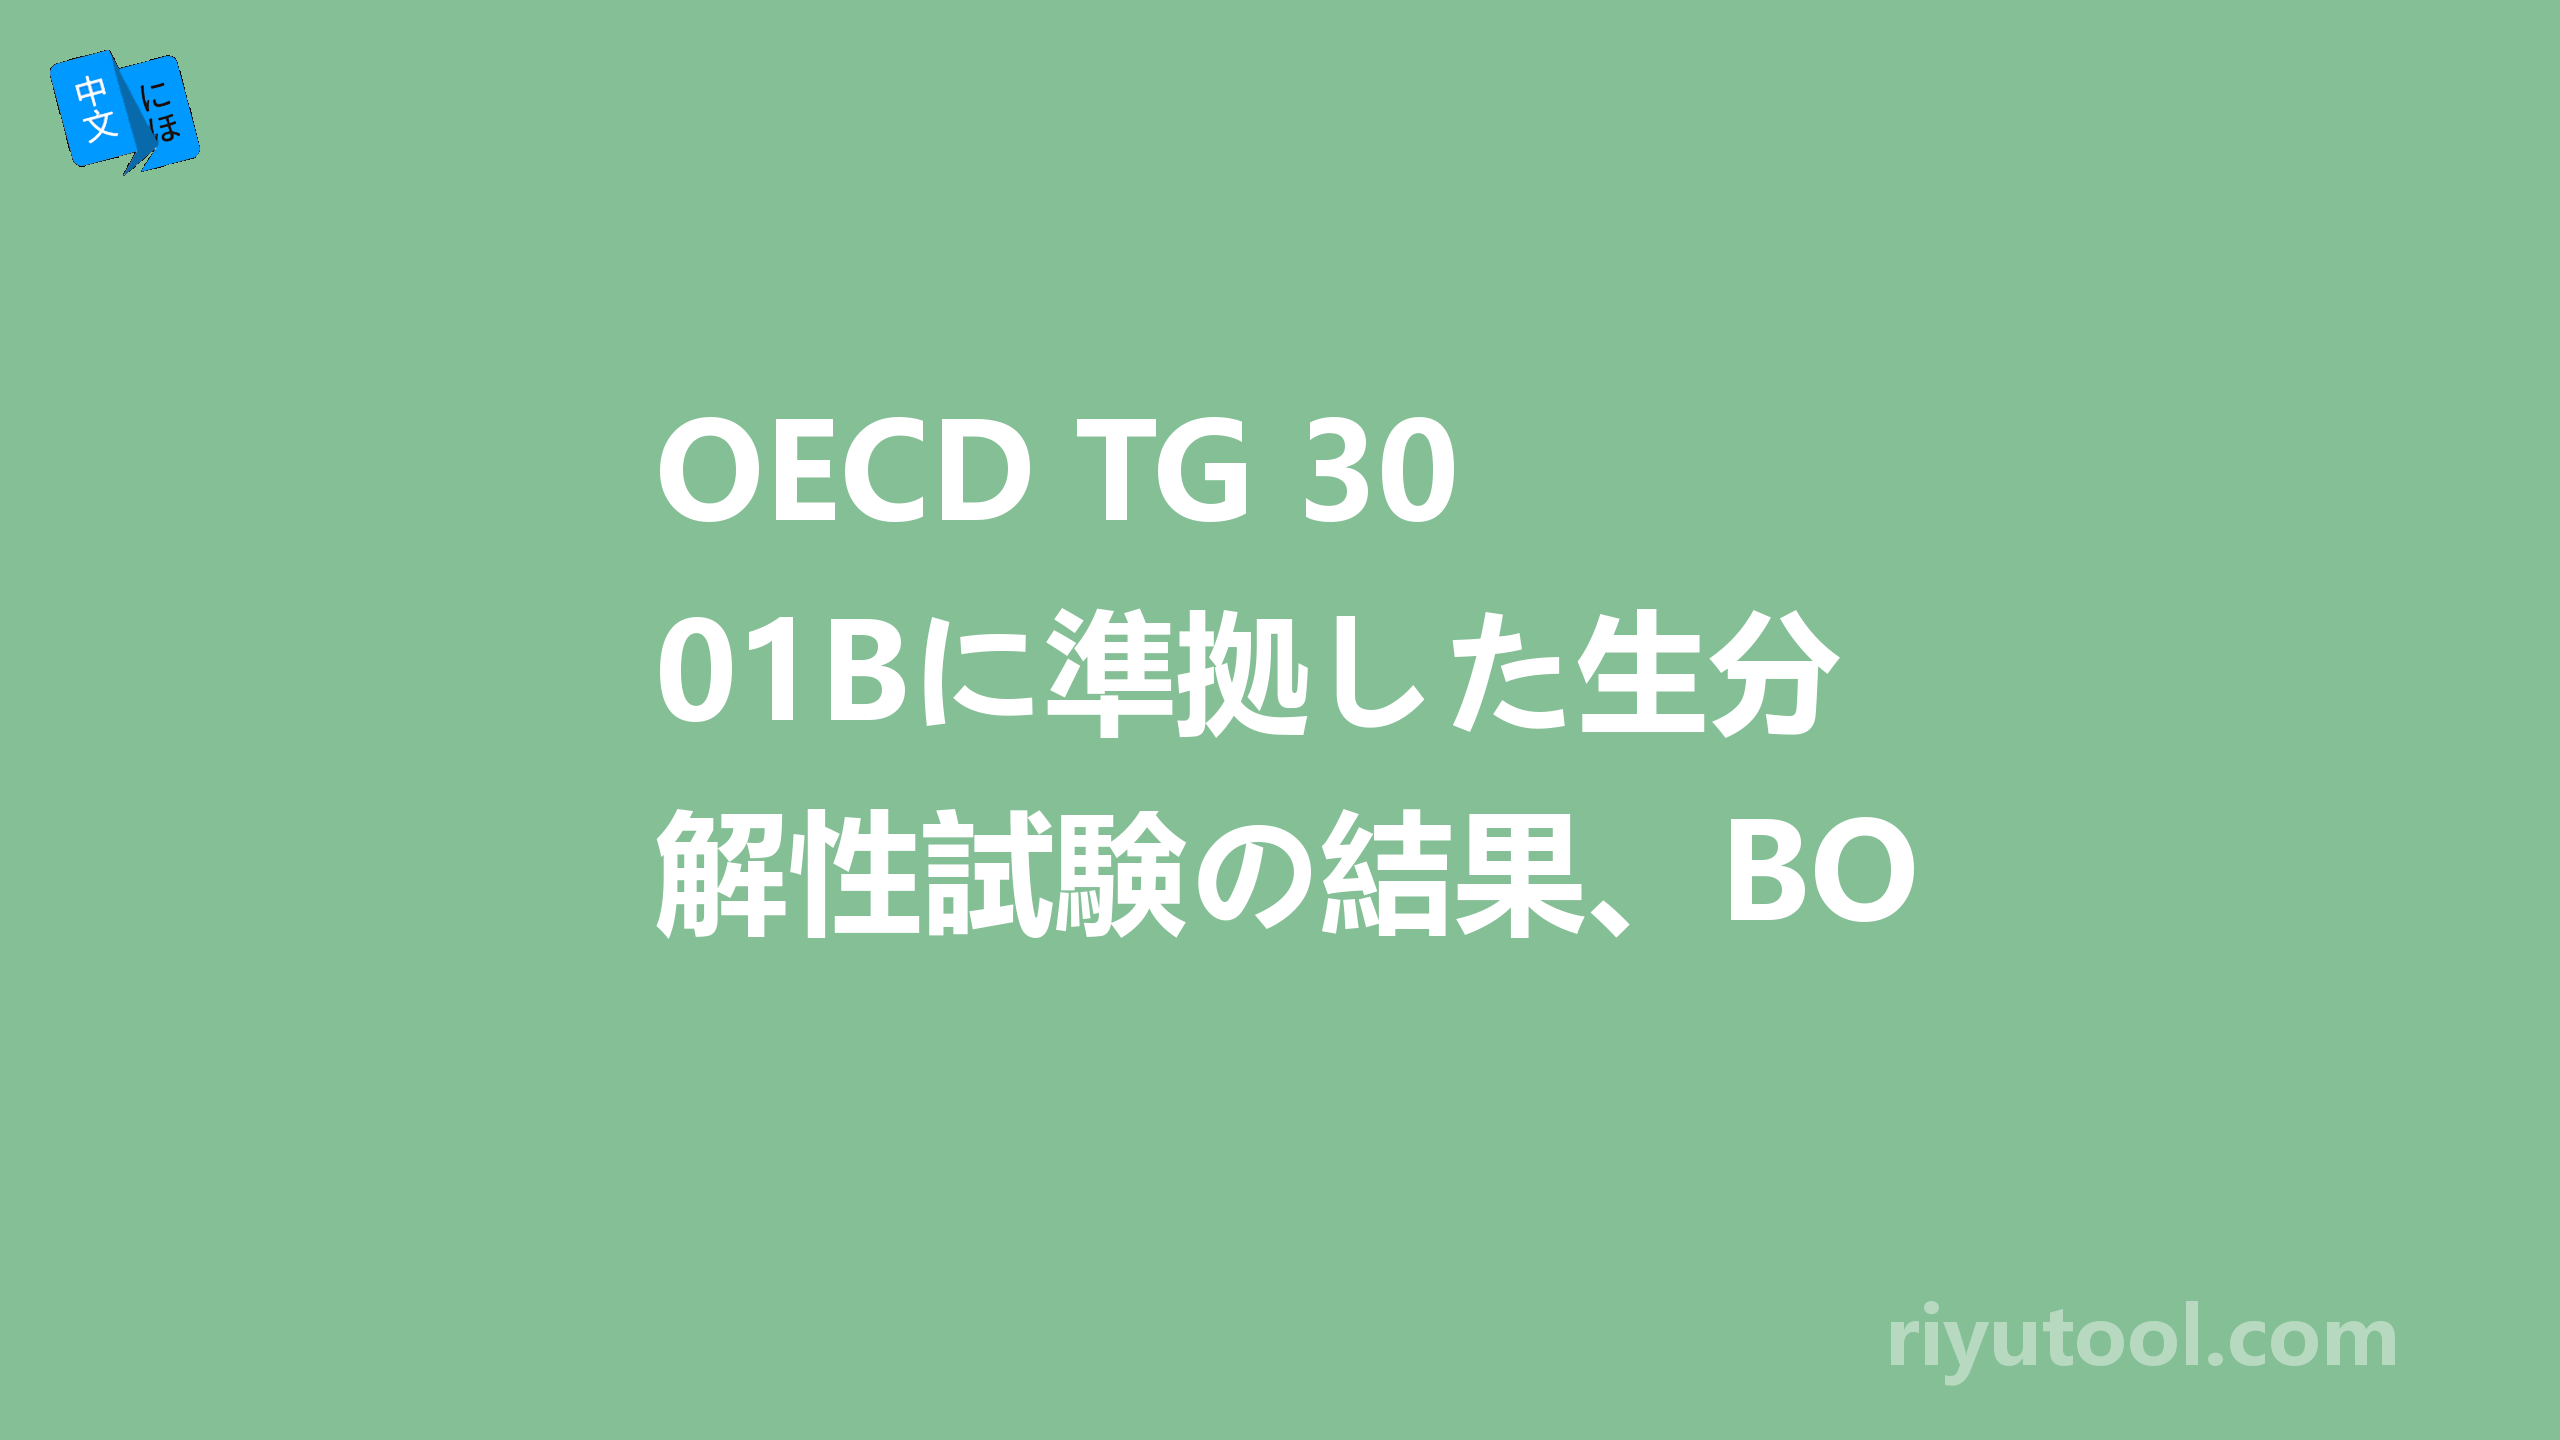 OECD TG 301Bに準拠した生分解性試験の結果、BODによる生分解度55